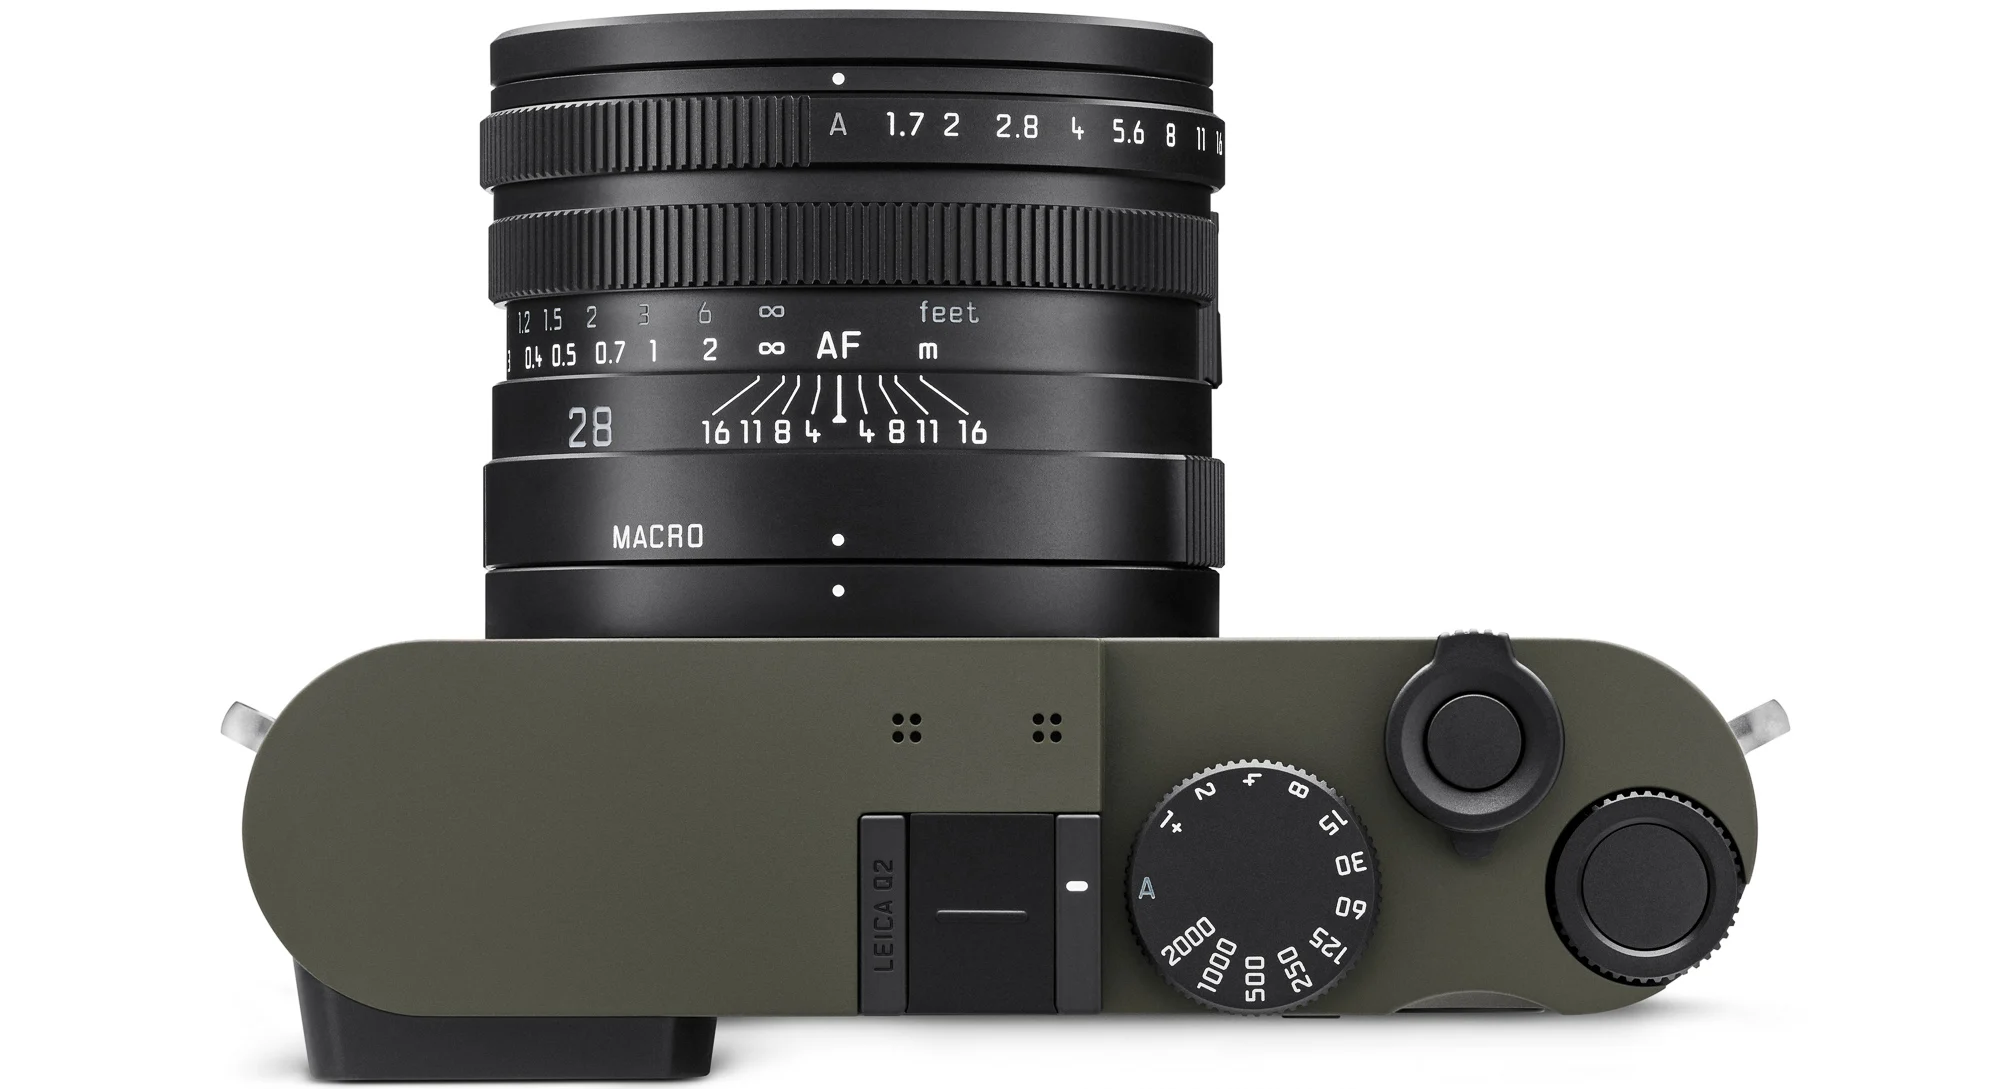 Leica giới thiệu phiên bản Q2 Reporter mới được bọc lớp vỏ Kevlar chống đạn